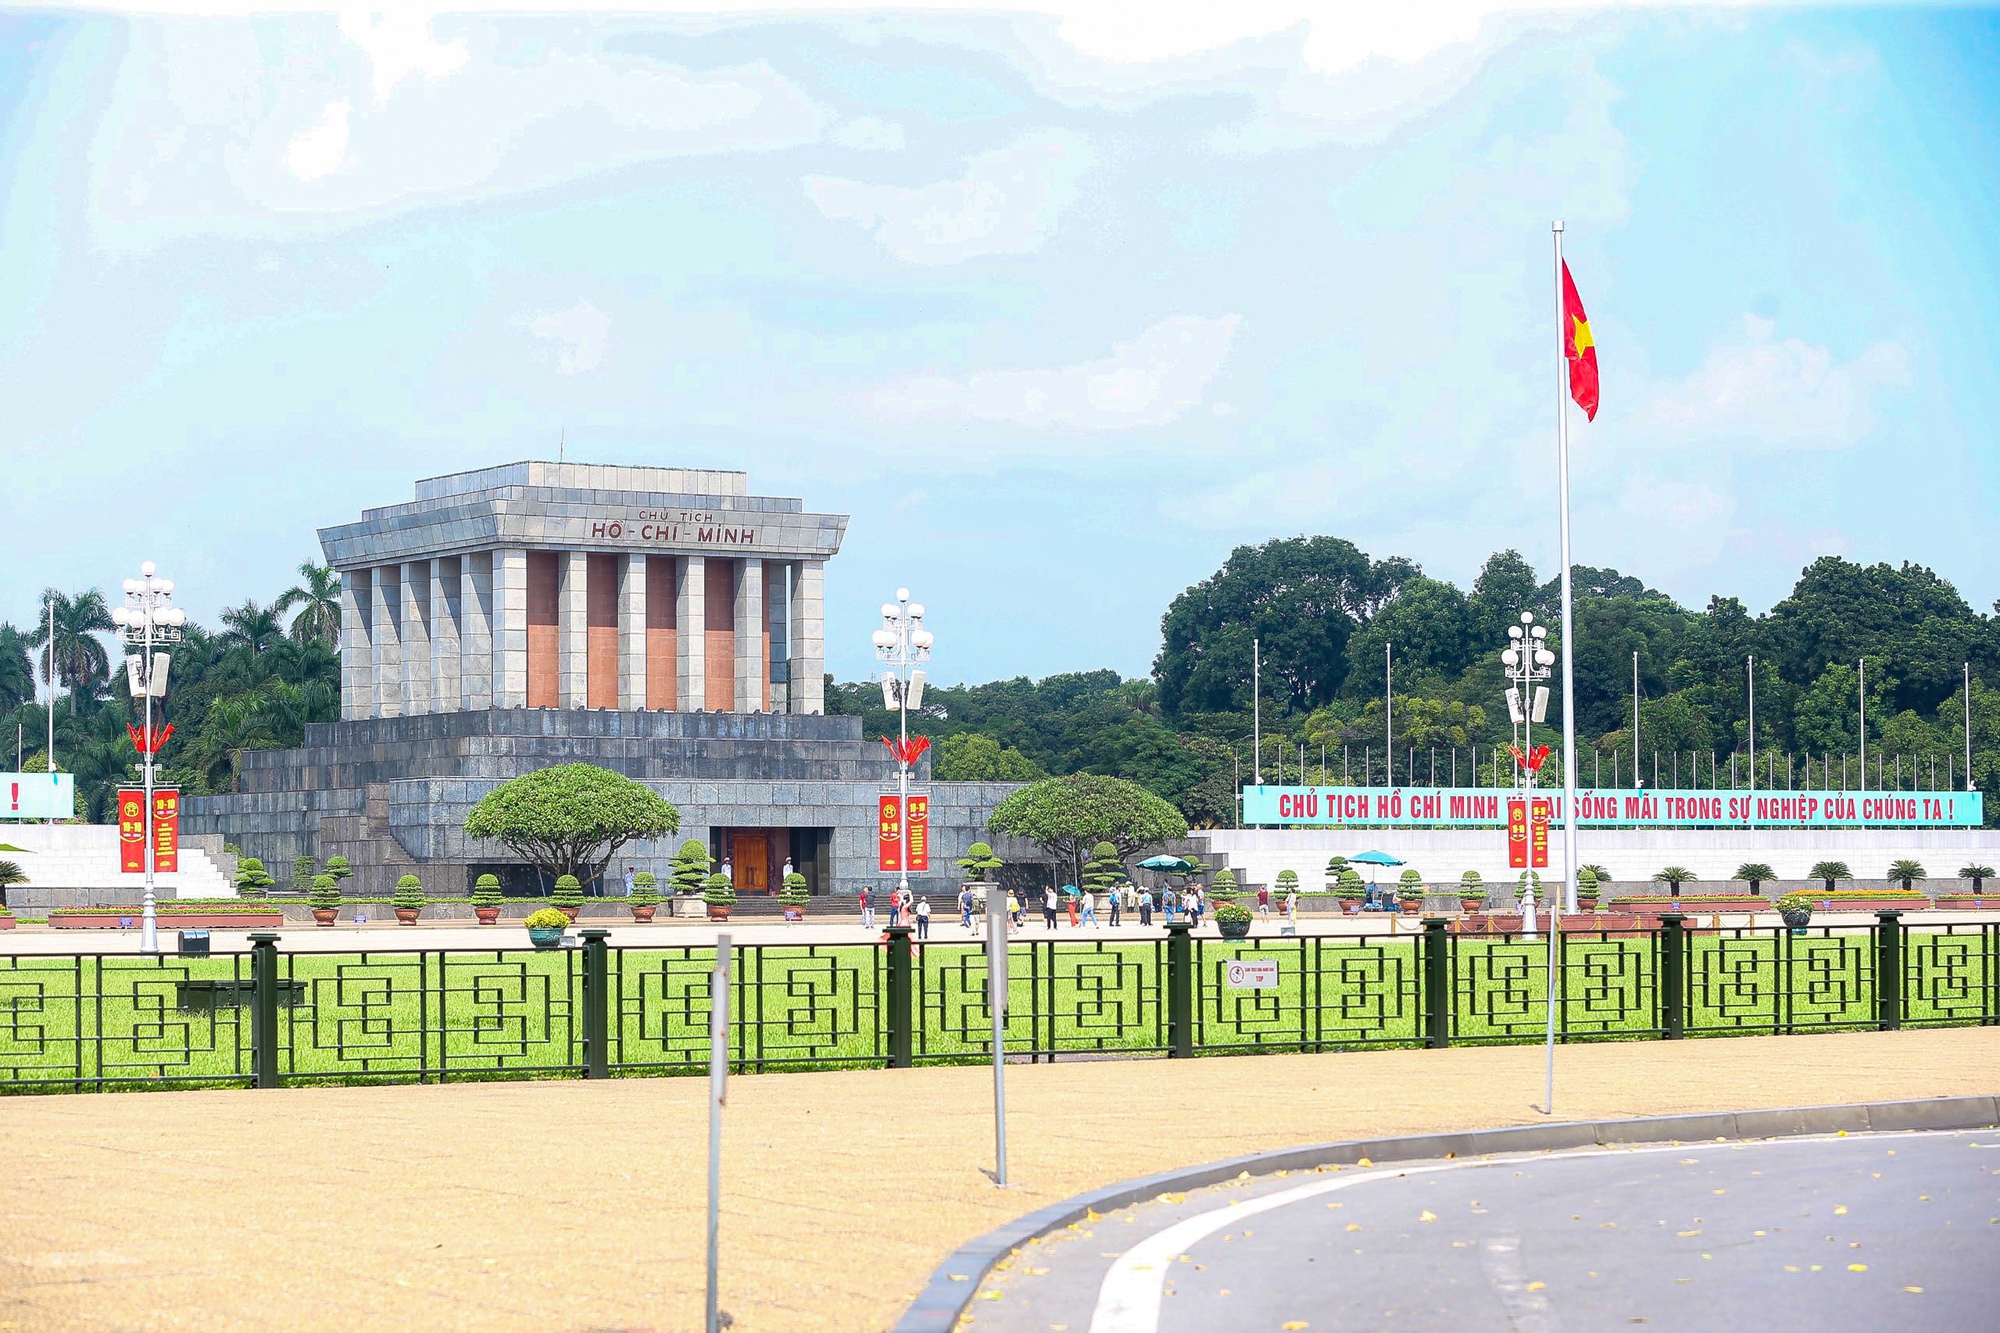 Đường phố Hà Nội trang hoàng mừng kỷ niệm 69 năm Ngày Giải phóng Thủ đô - Ảnh 1.